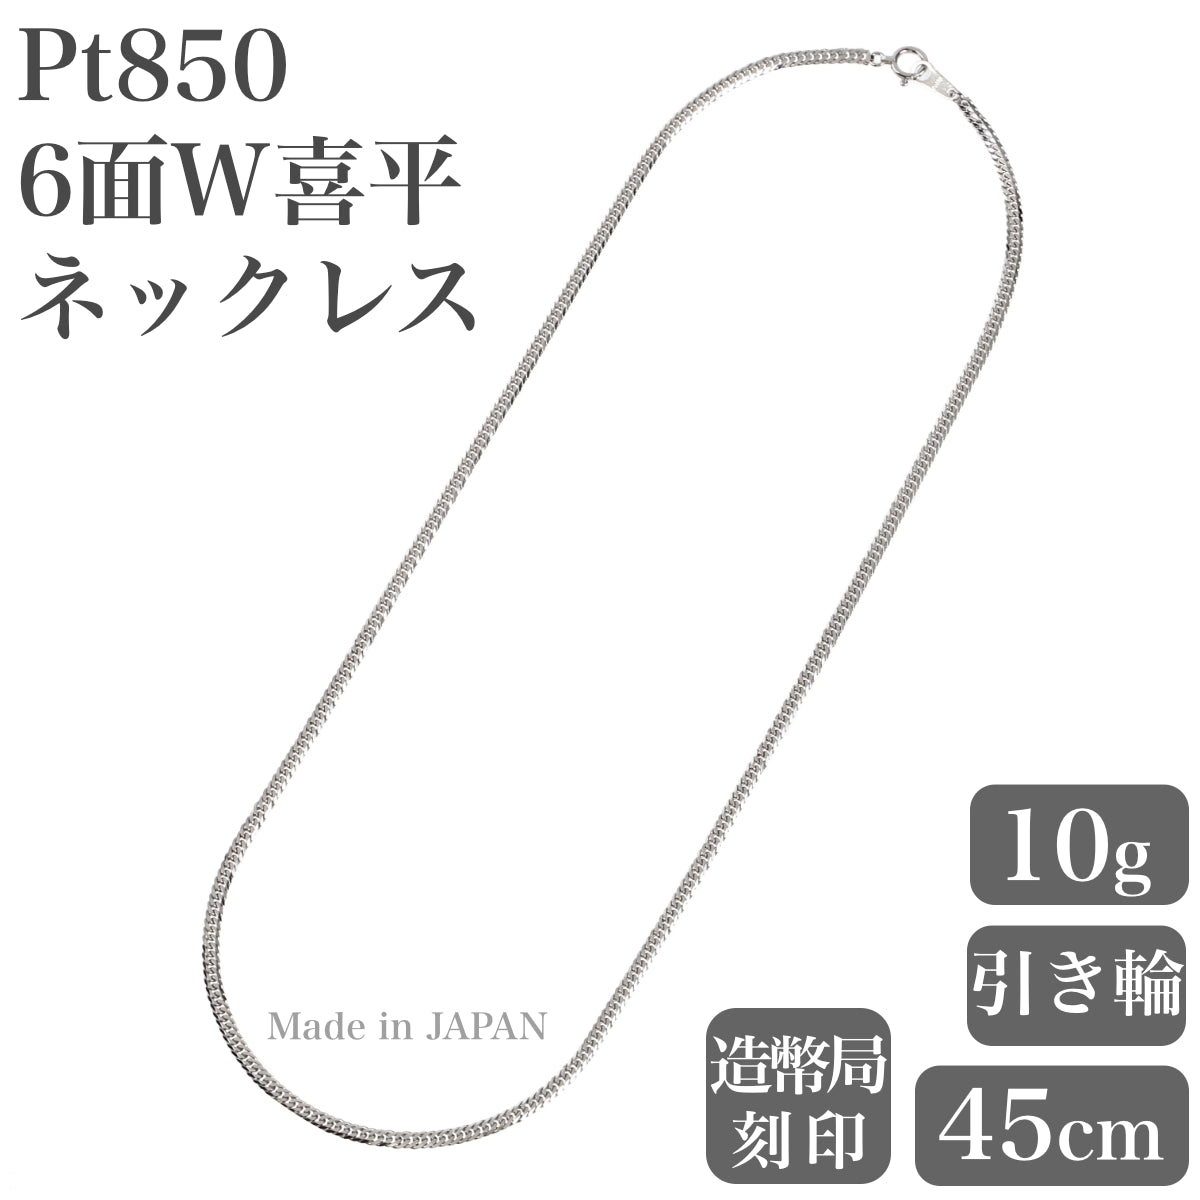 ネックレス新品 Pt850 プラチナ 喜平チェーンネックレス 約60㎝ 総重量約10g